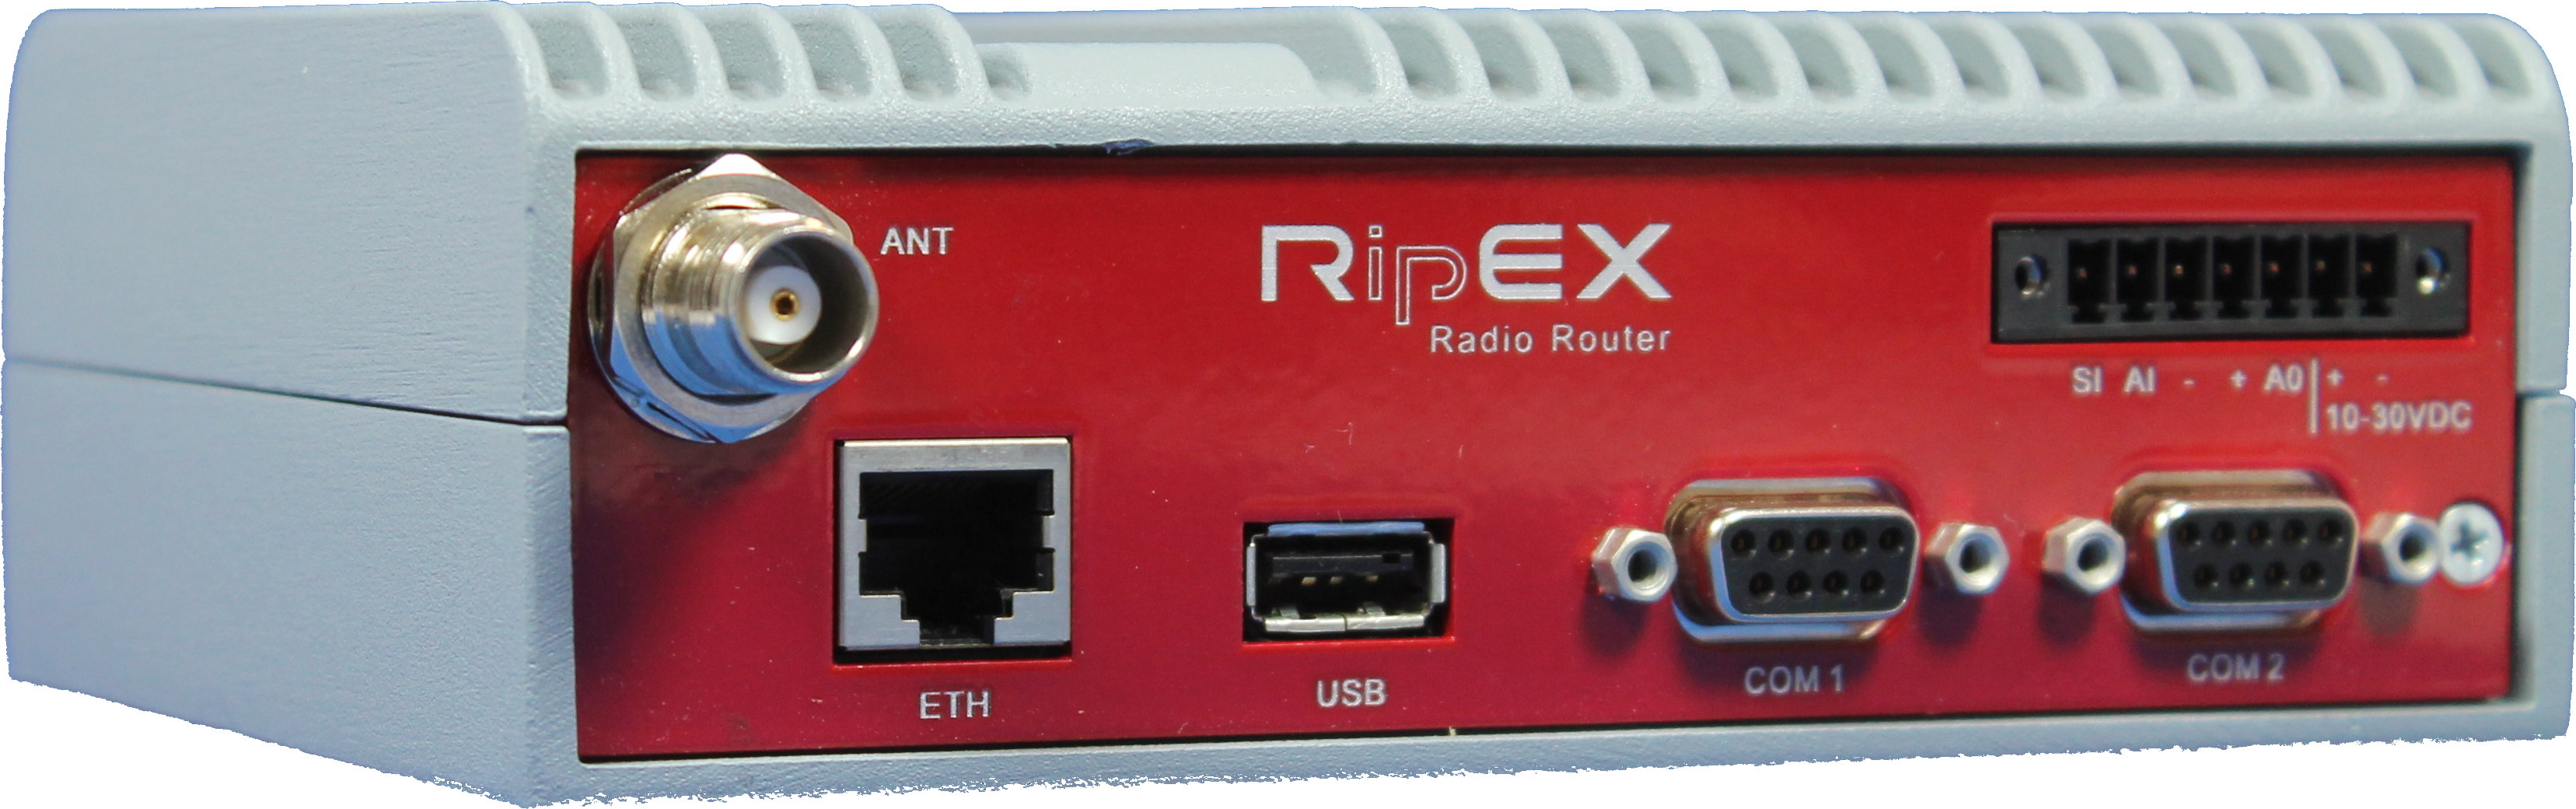 RipEX Radio Modem Router